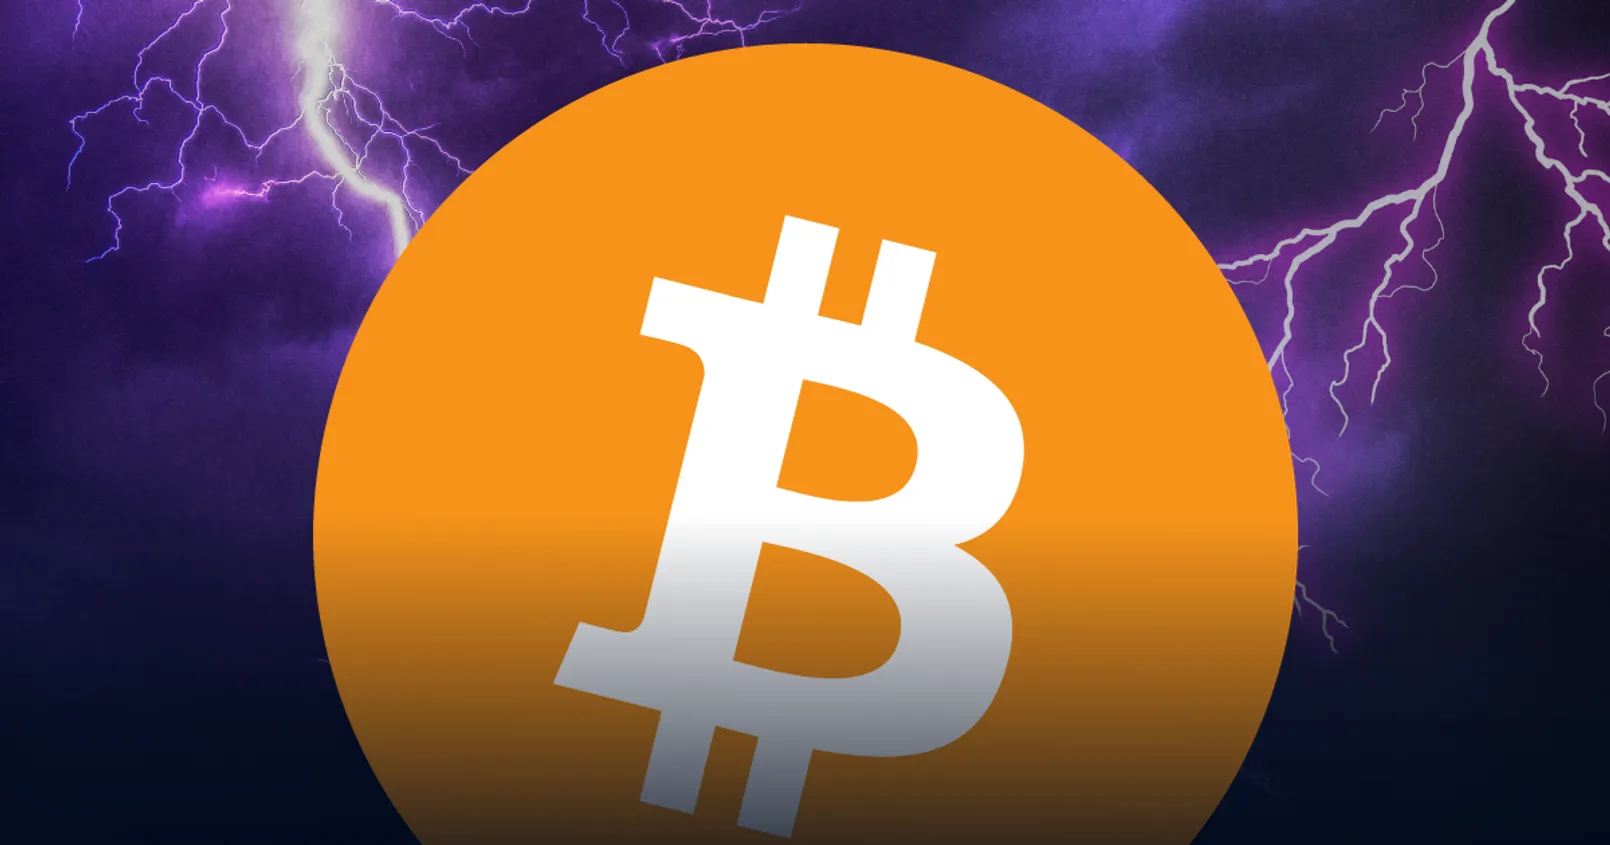 สรุปดราม่า ‘Lightning Network’ เกิดอะไรขึ้น? ทำไมนักพัฒนาหลักลาออก แล้วช่องโหว่ที่พบจะเป็นจุดจบของ Bitcoin Lightning จริงหรือ?